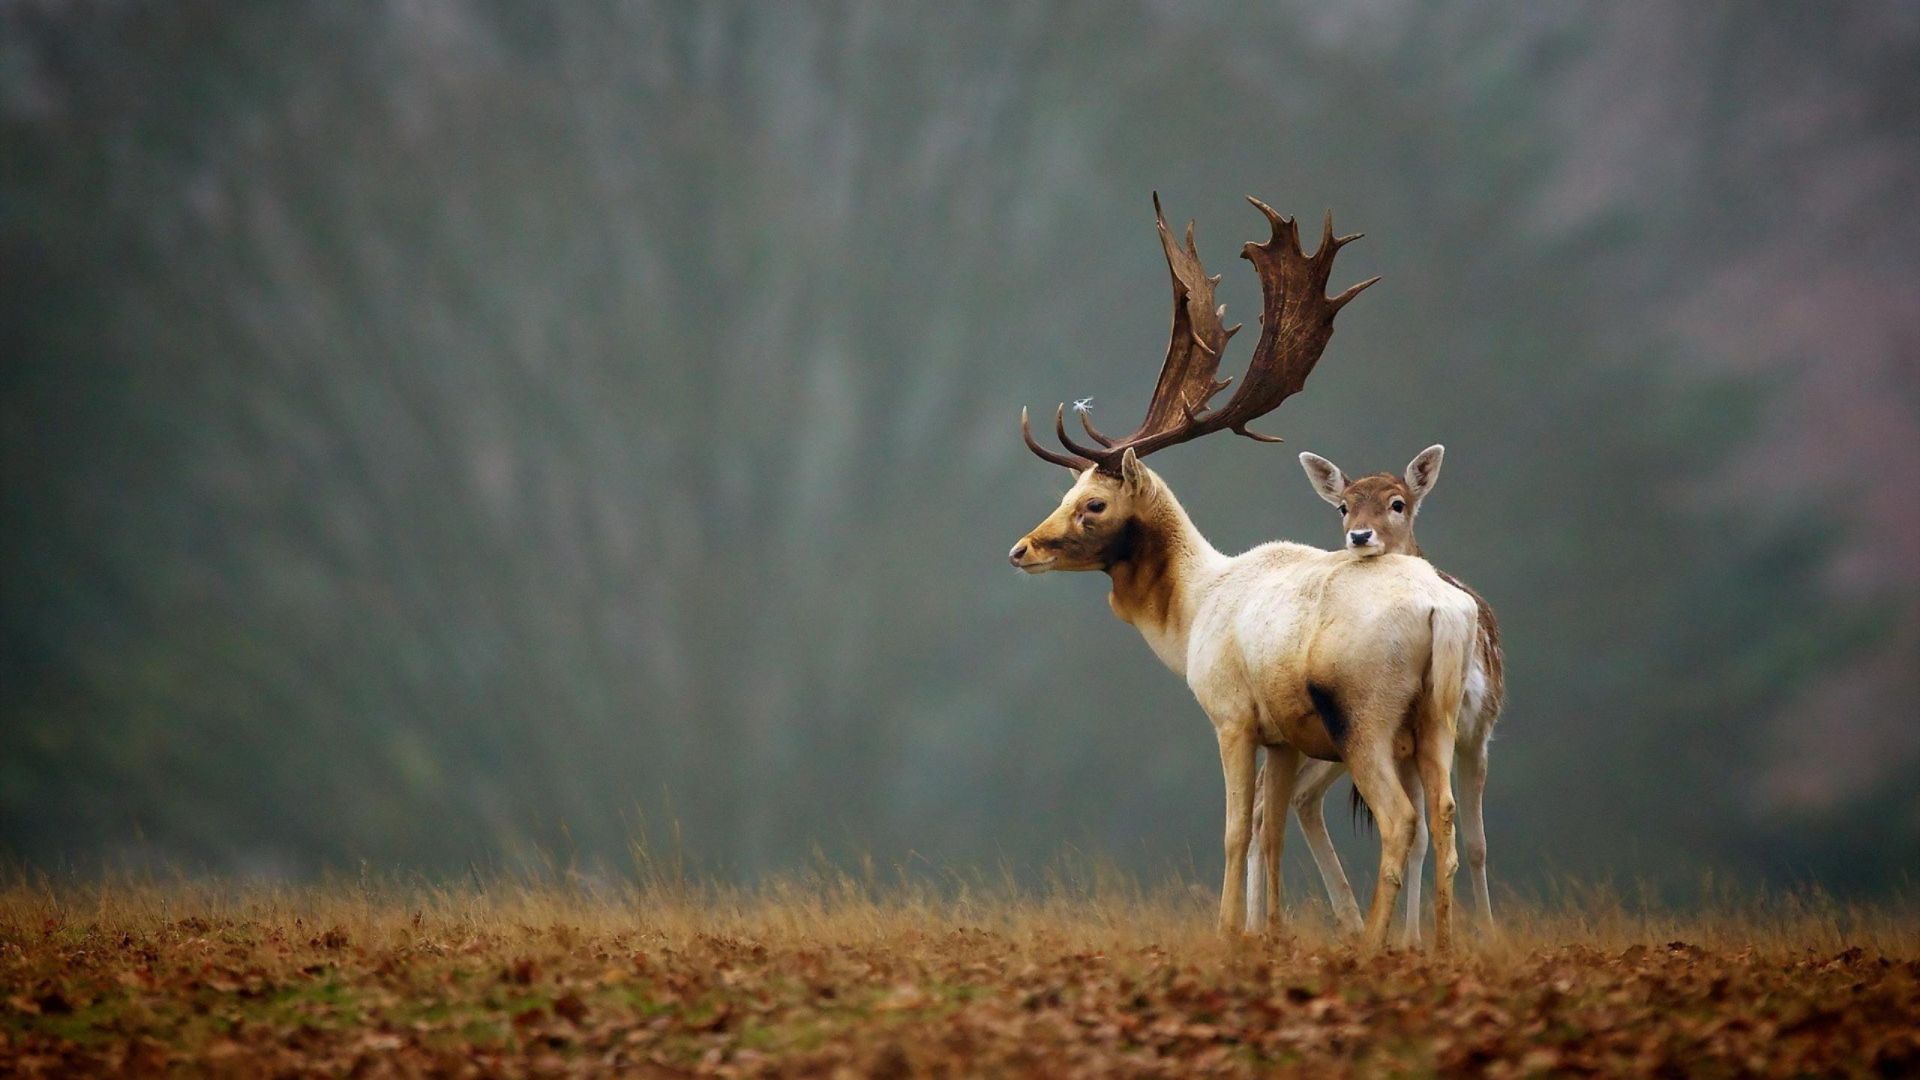 Deer, meadow, fog, cute animals (horizontal)